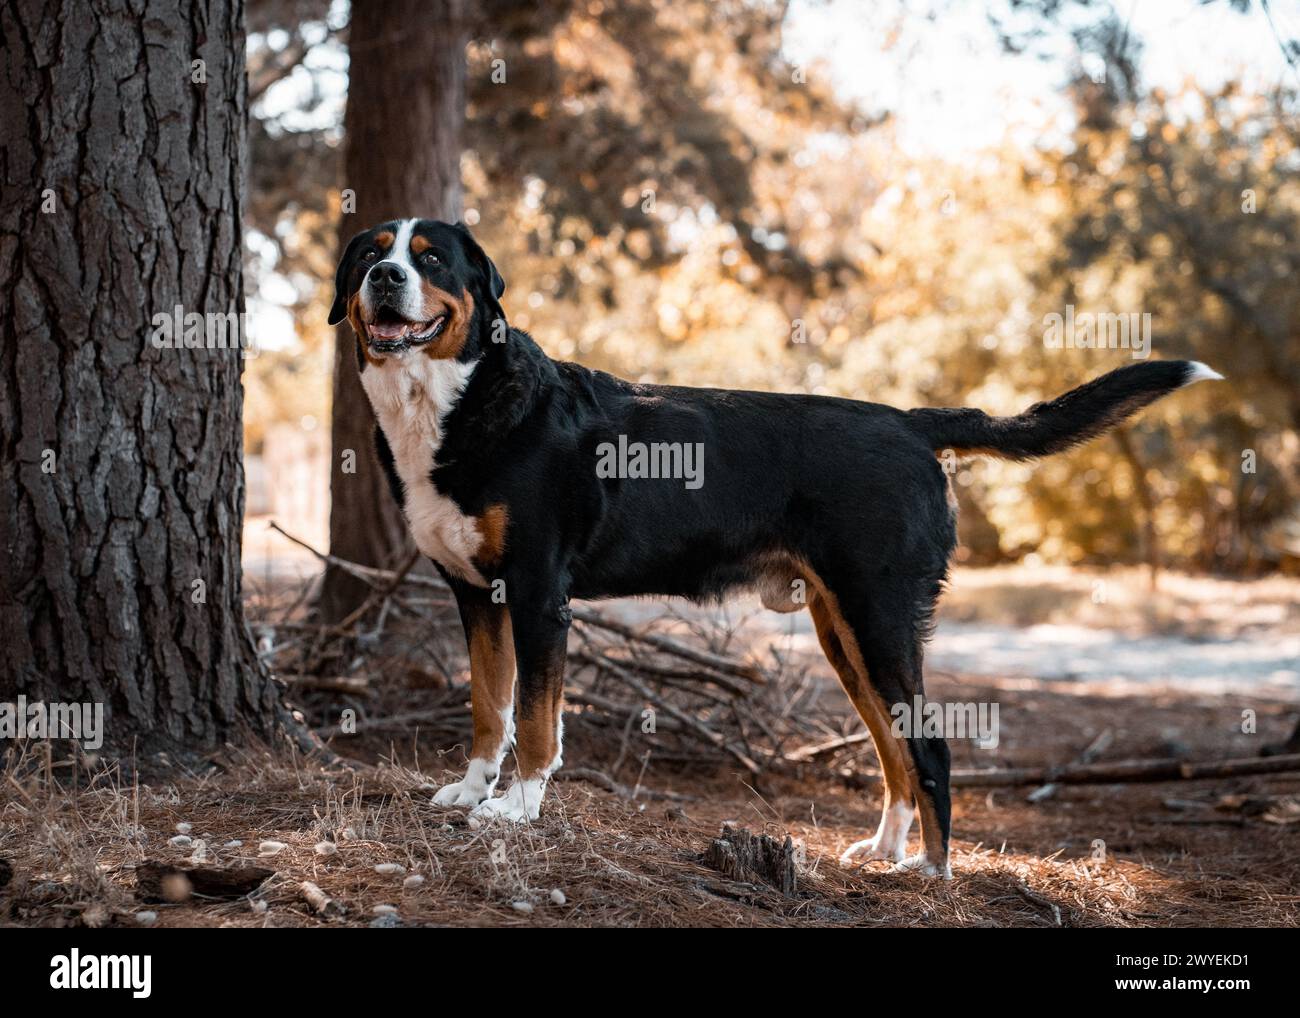 Un Grand chien de montagne suisse dans une forêt Banque D'Images